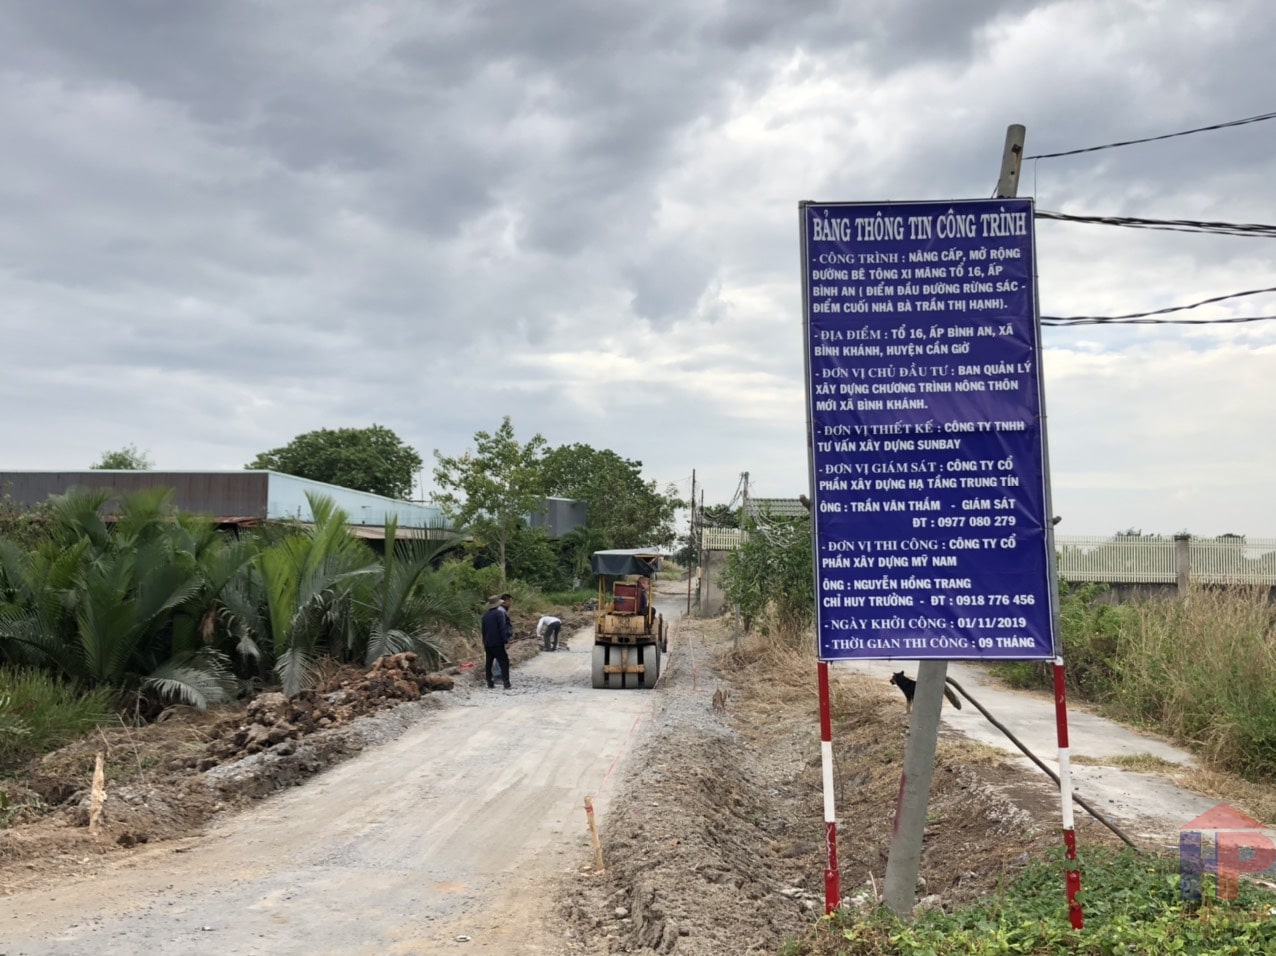 Bán đất tại xã Bình Khánh huyện Cần Giờ, DT 5200m2, giá 2.1Tr/m2